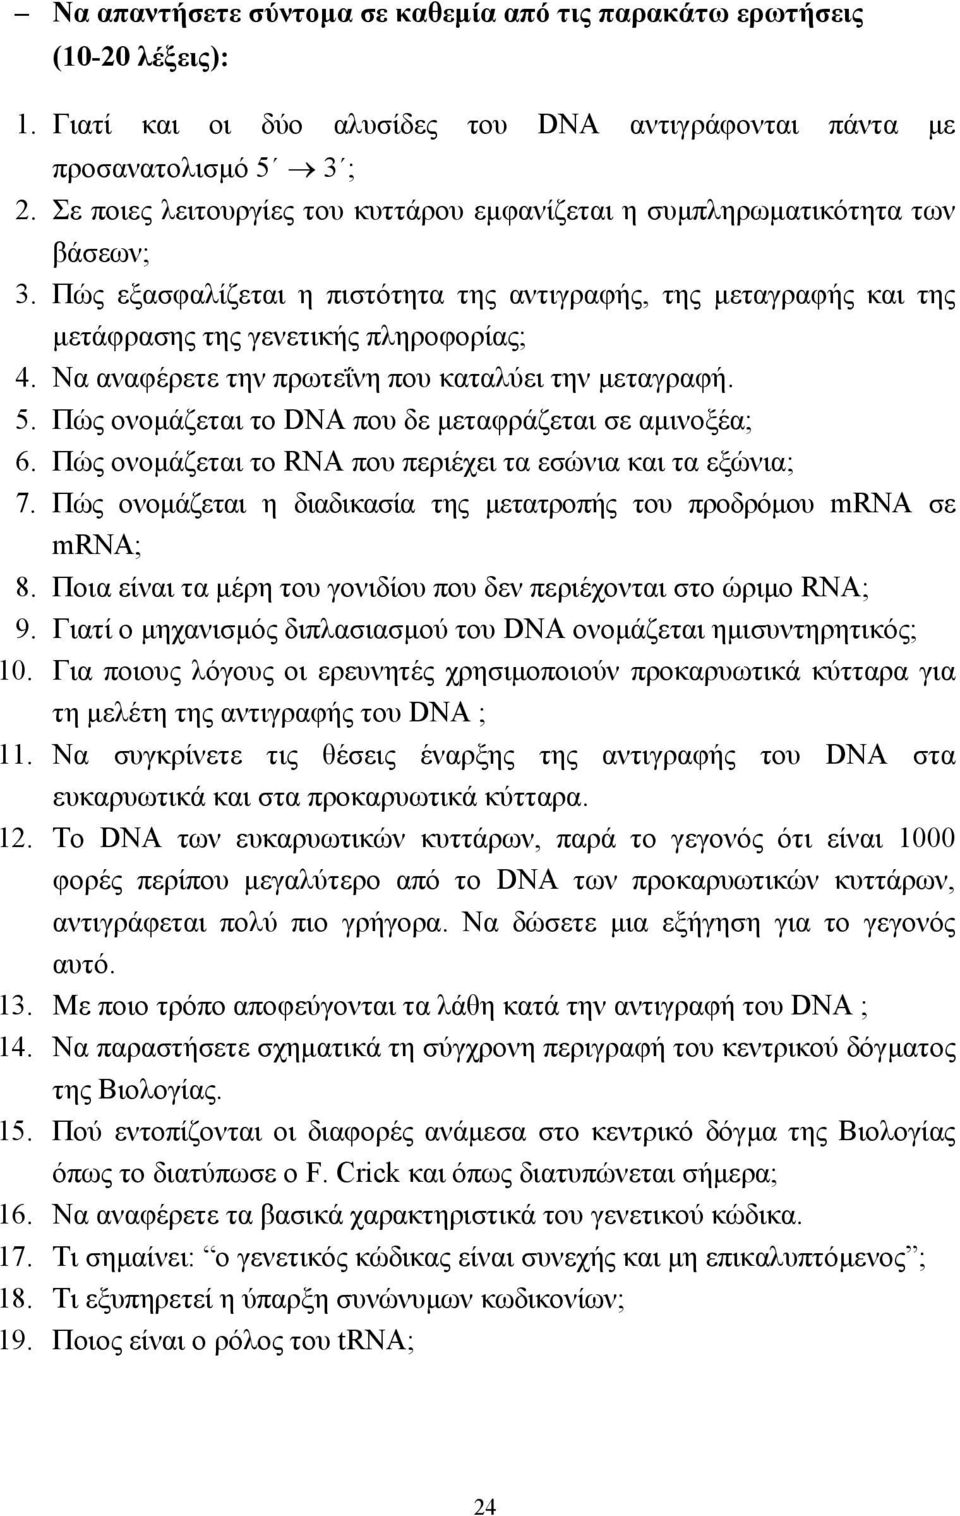 Να αναφέρετε την πρωτεΐνη που καταλύει την µεταγραφή. 5. Πώς ονοµάζεται το DNA που δε µεταφράζεται σε αµινοξέα; 6. Πώς ονοµάζεται το RNA που περιέχει τα εσώνια και τα εξώνια; 7.